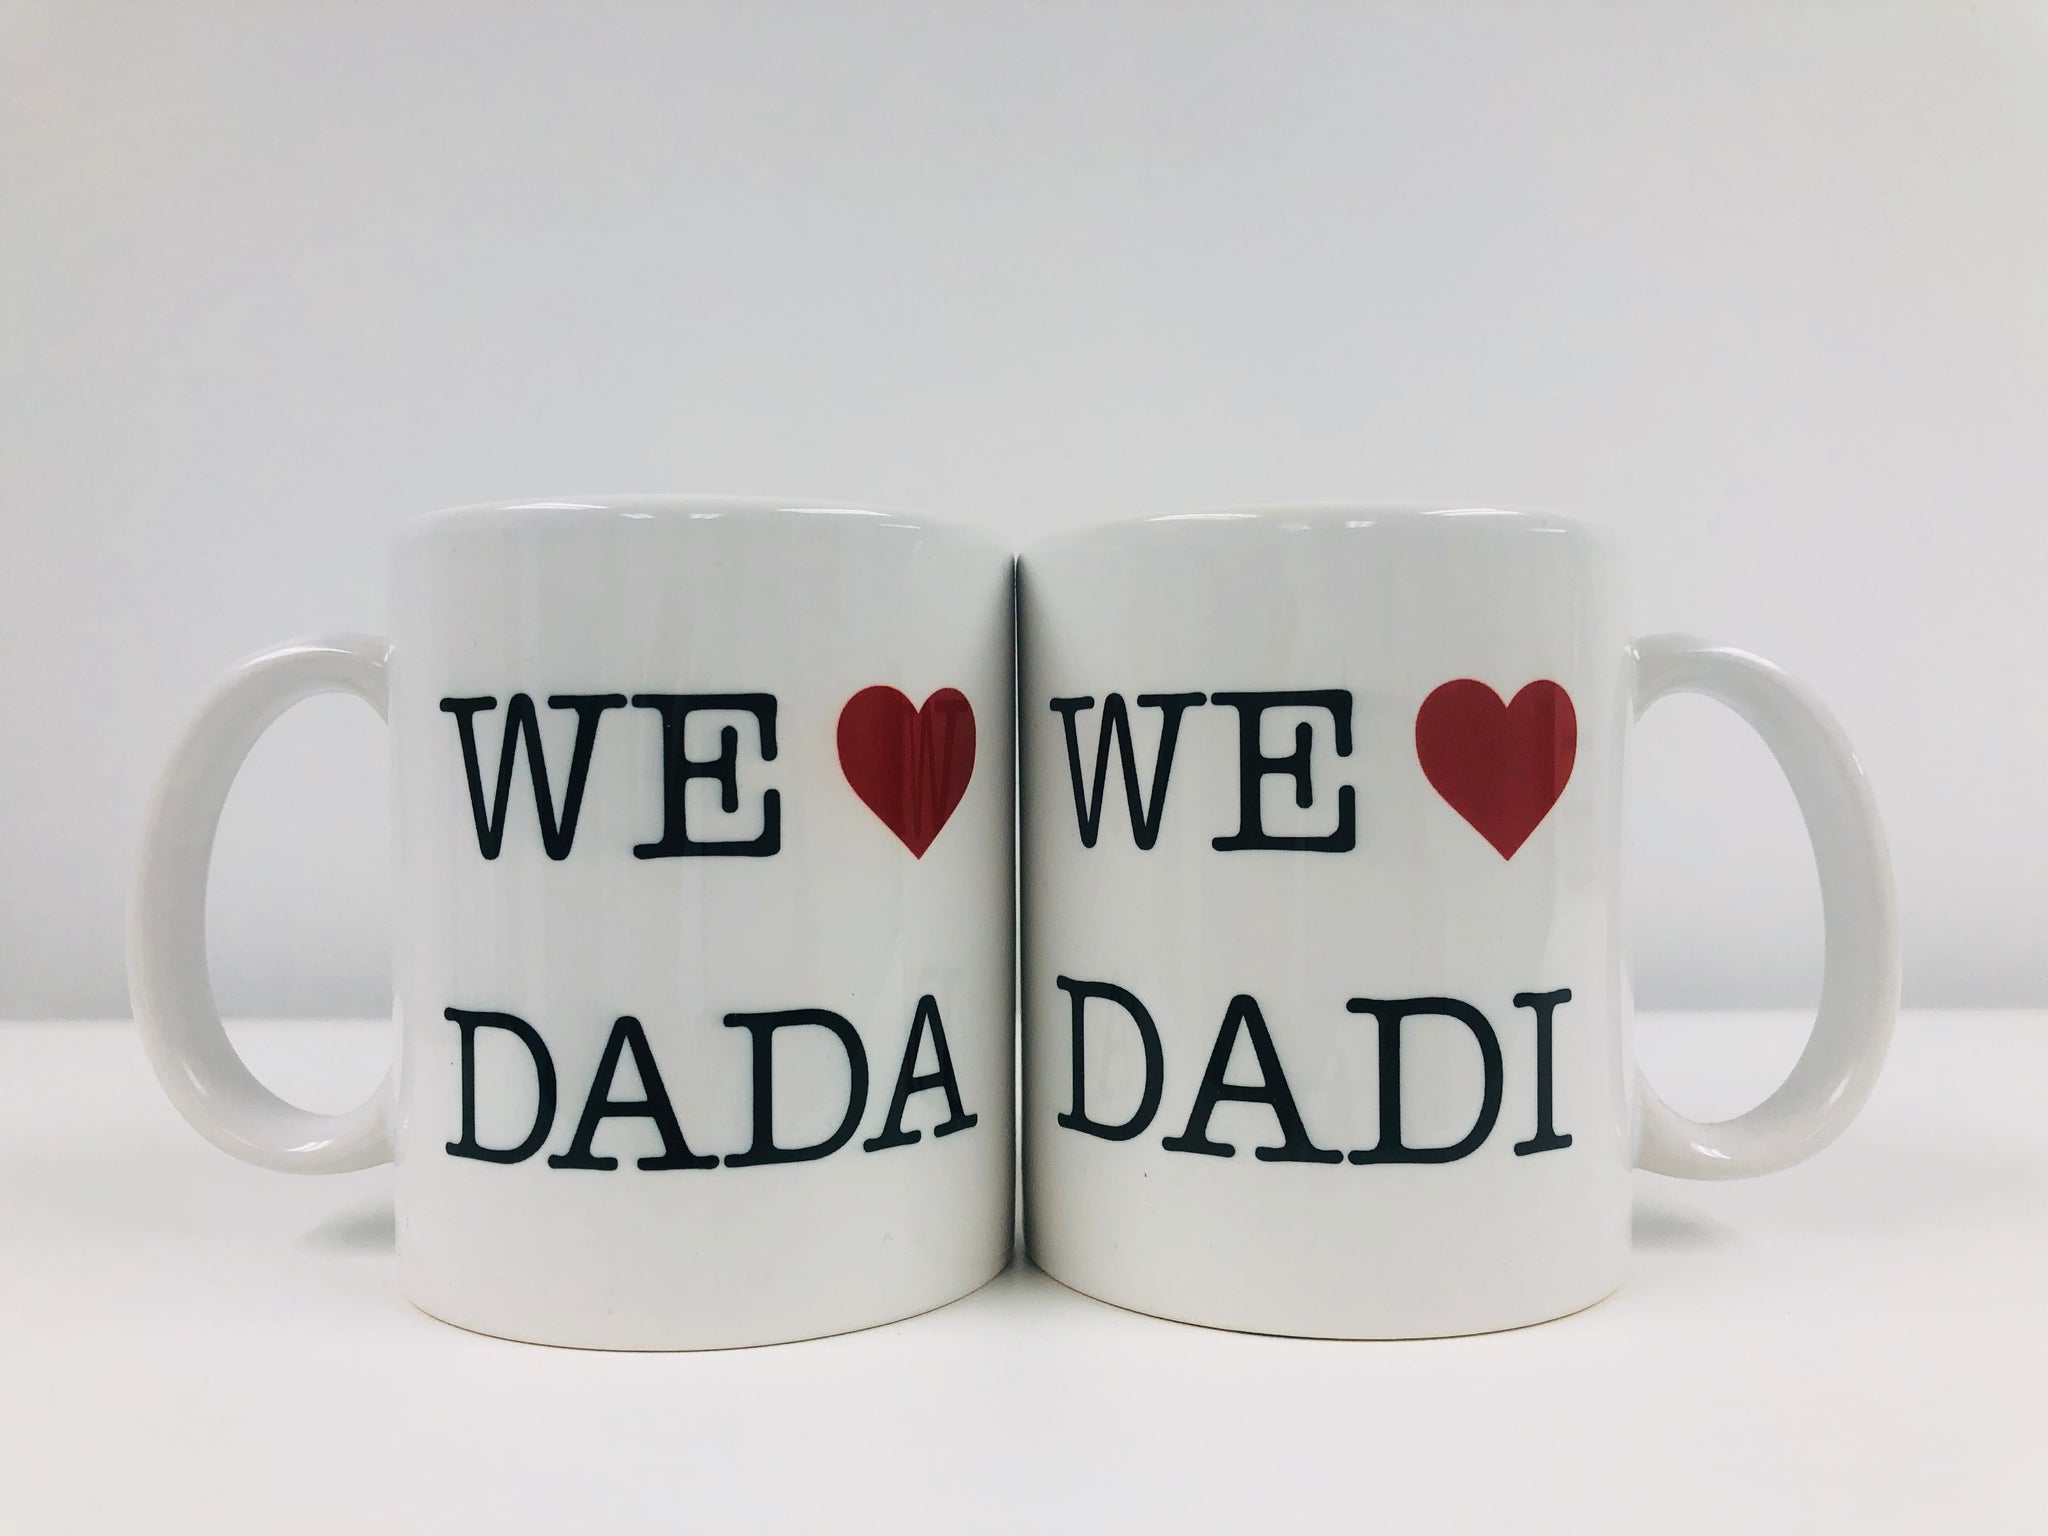 Dada/Dadi Mug Set